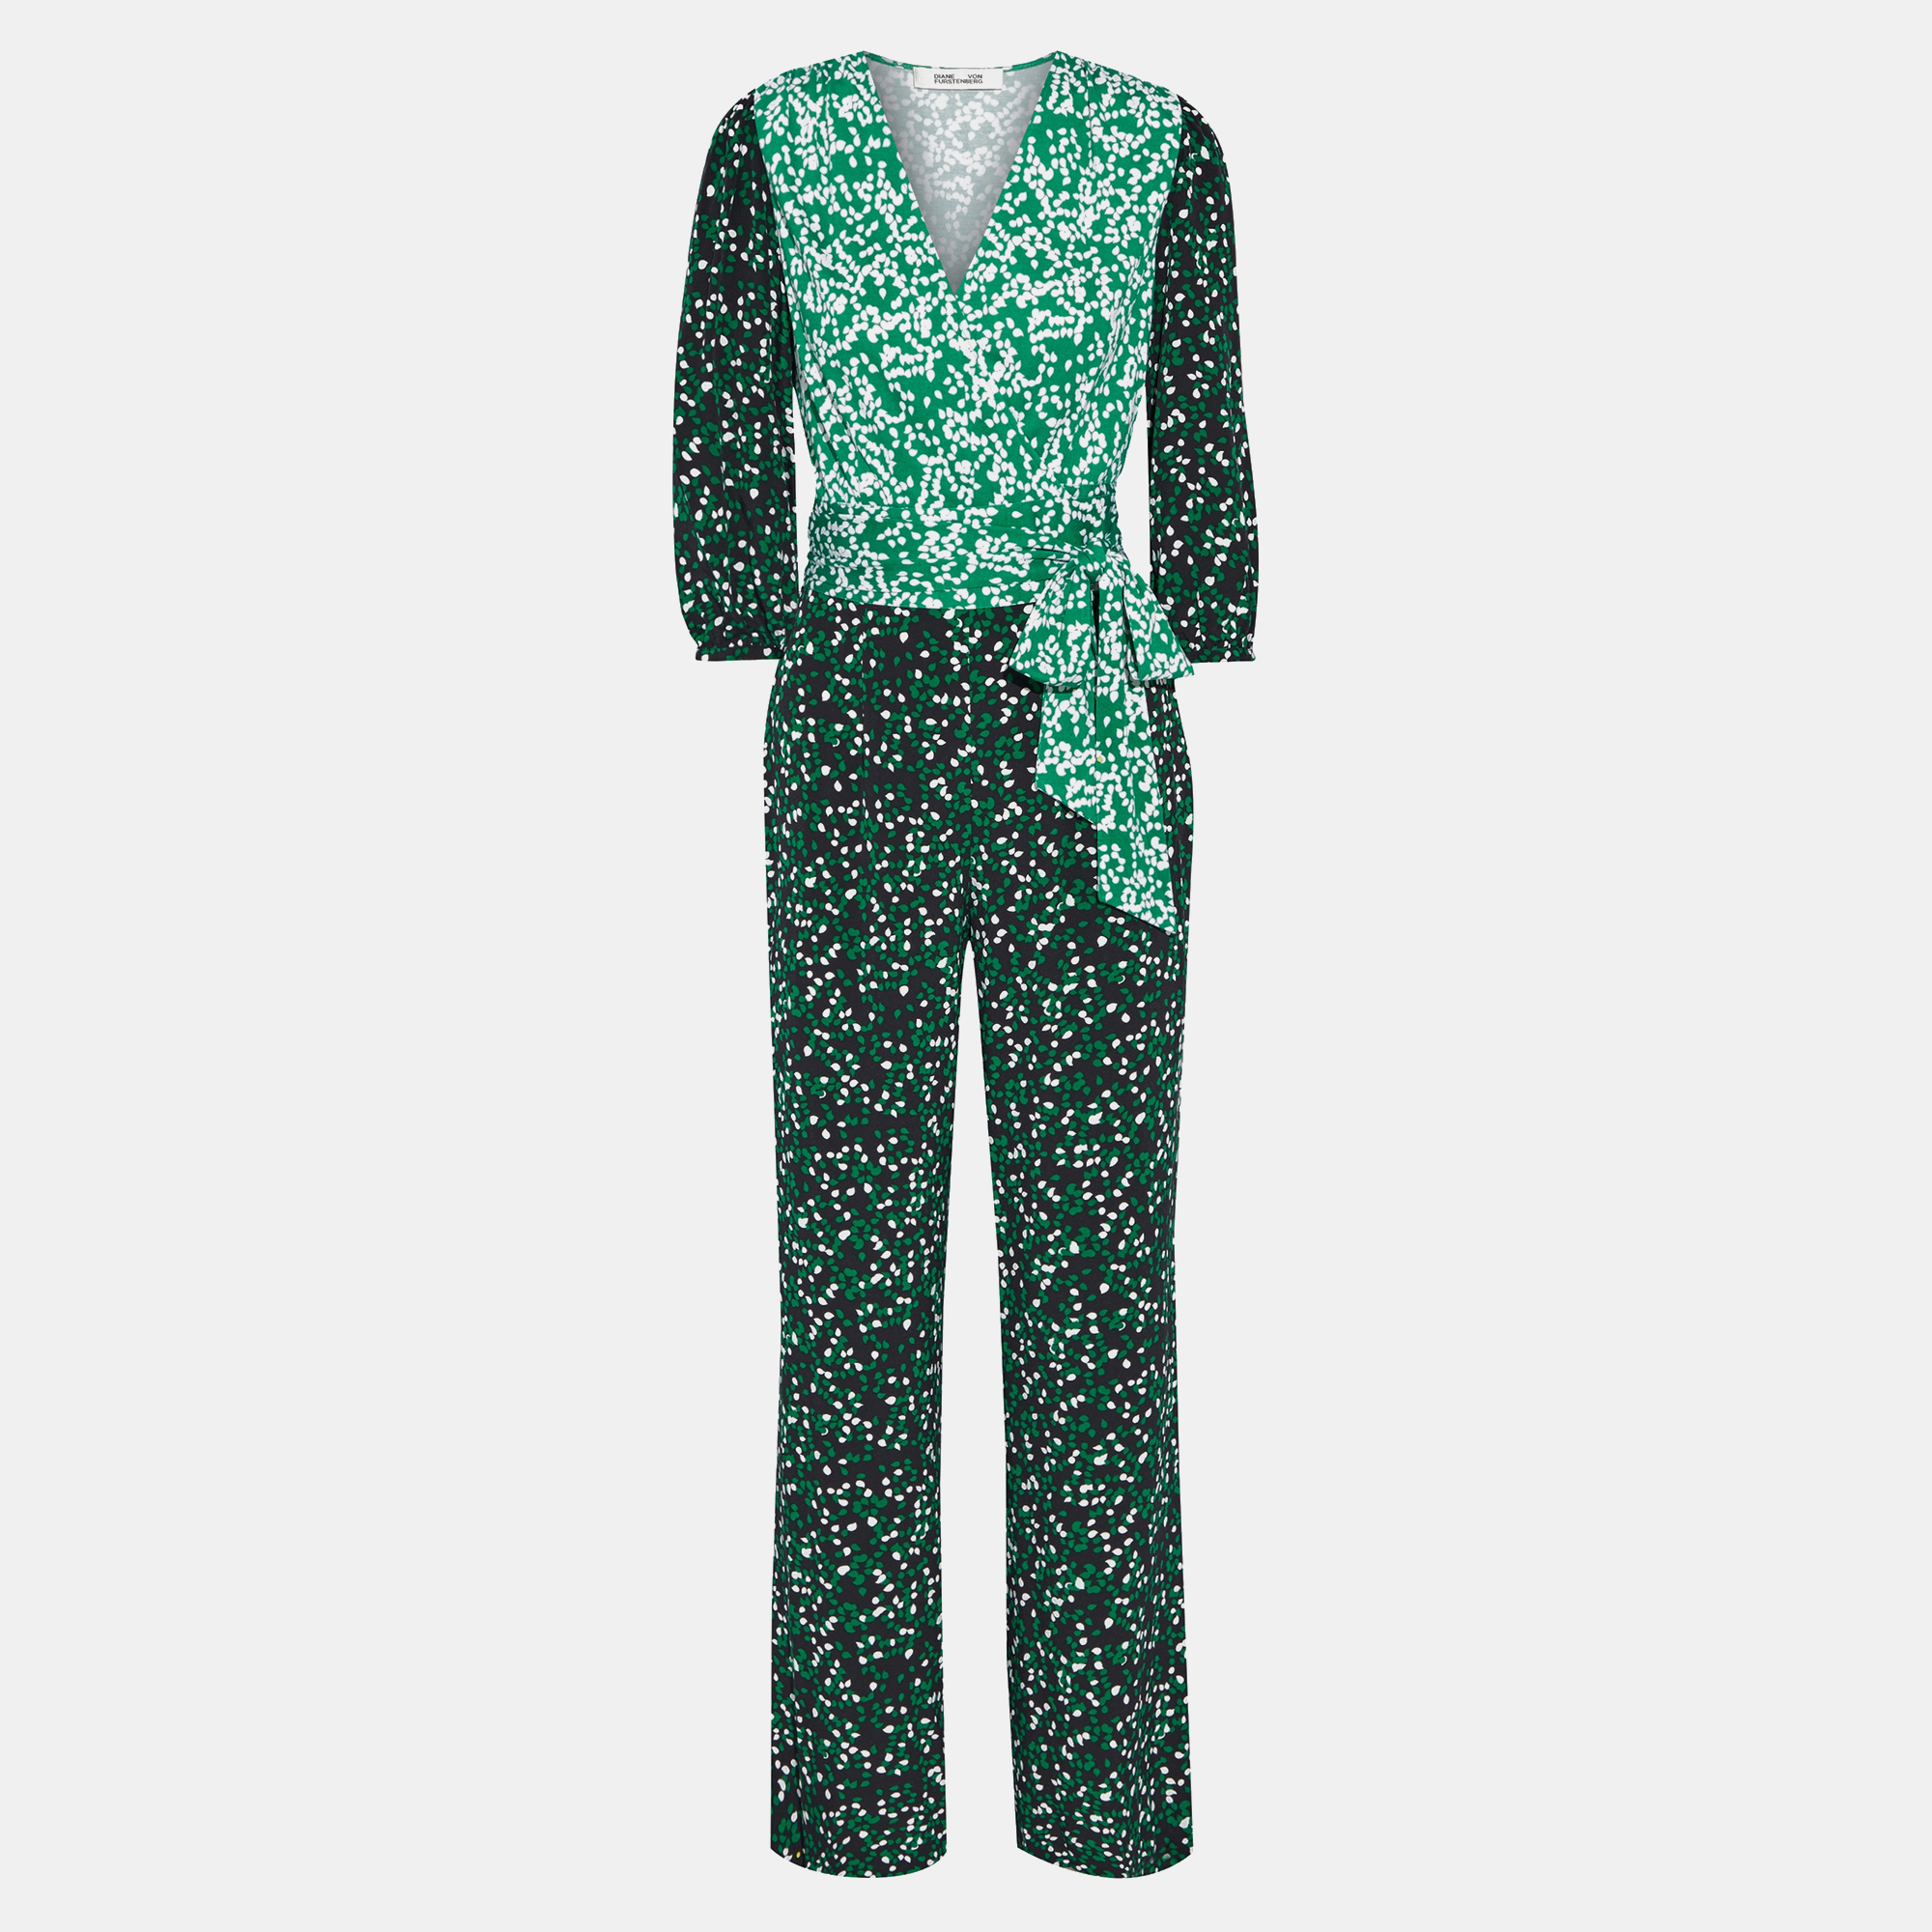 Diane von furstenberg silk jumpsuits 16